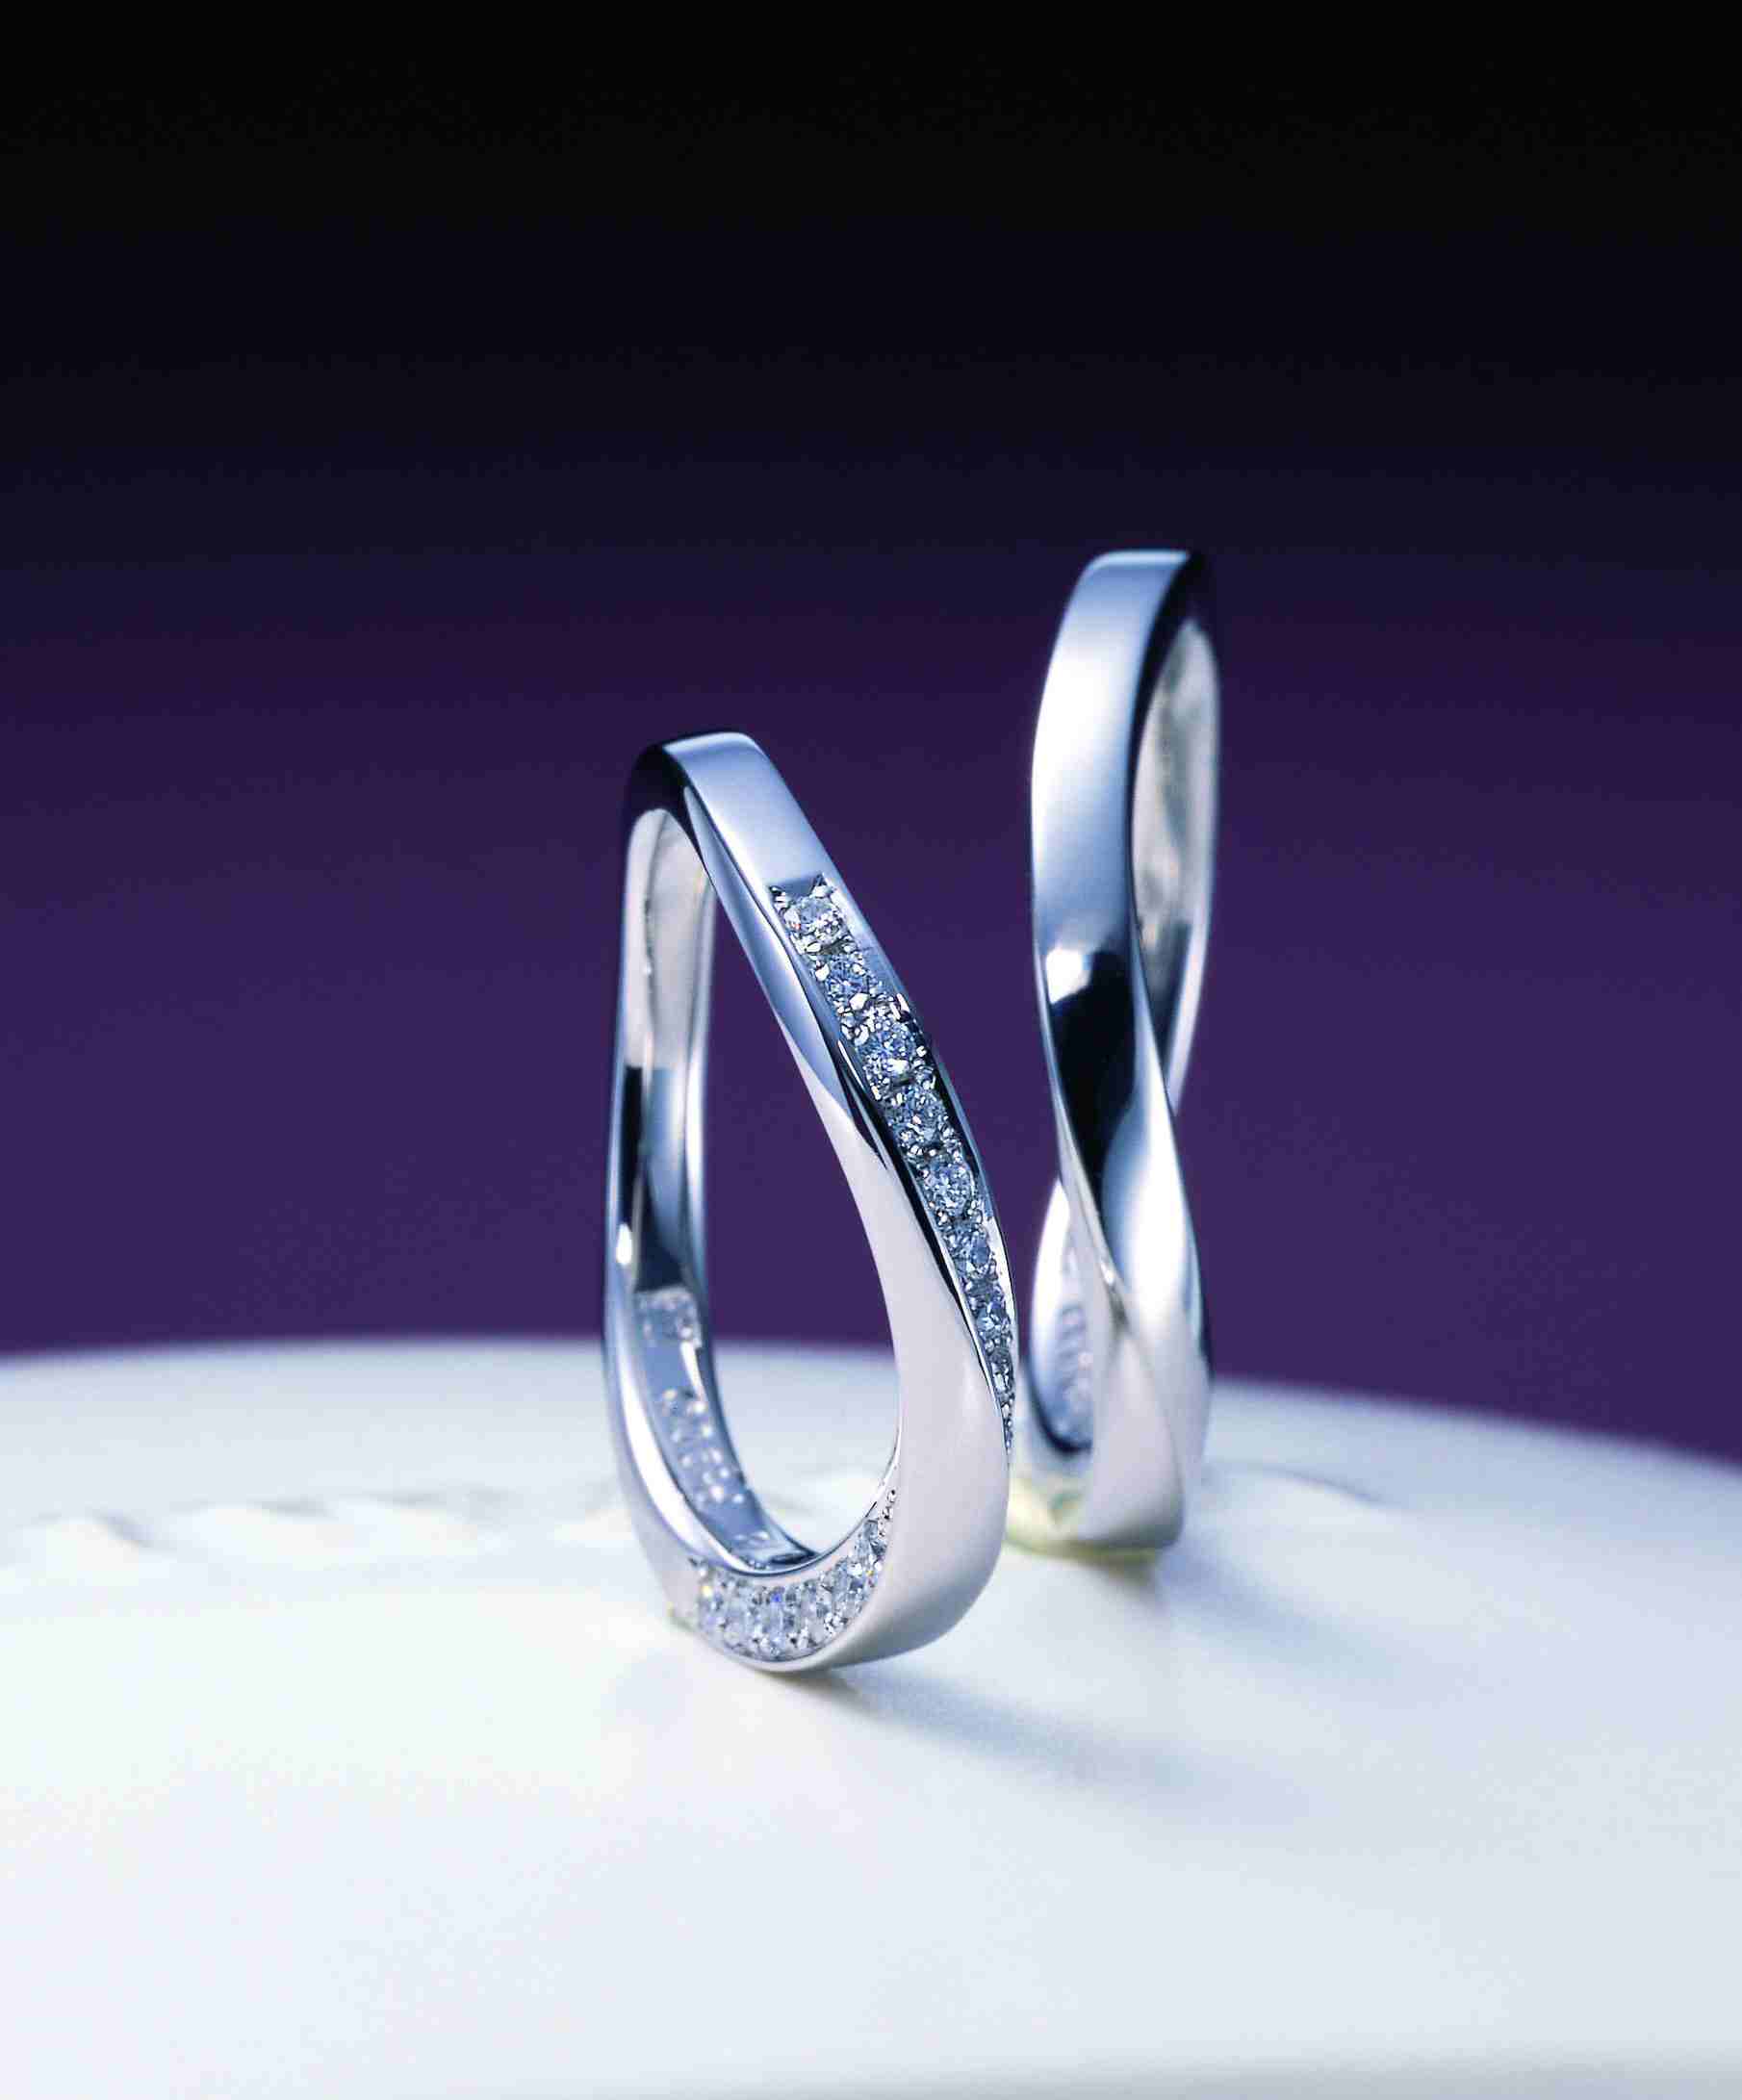 「杜若」「凛」「綺羅」。漢字テストではありません。指輪の名前です。～俄の結婚指輪のエピソード_f0118568_23345891.jpg